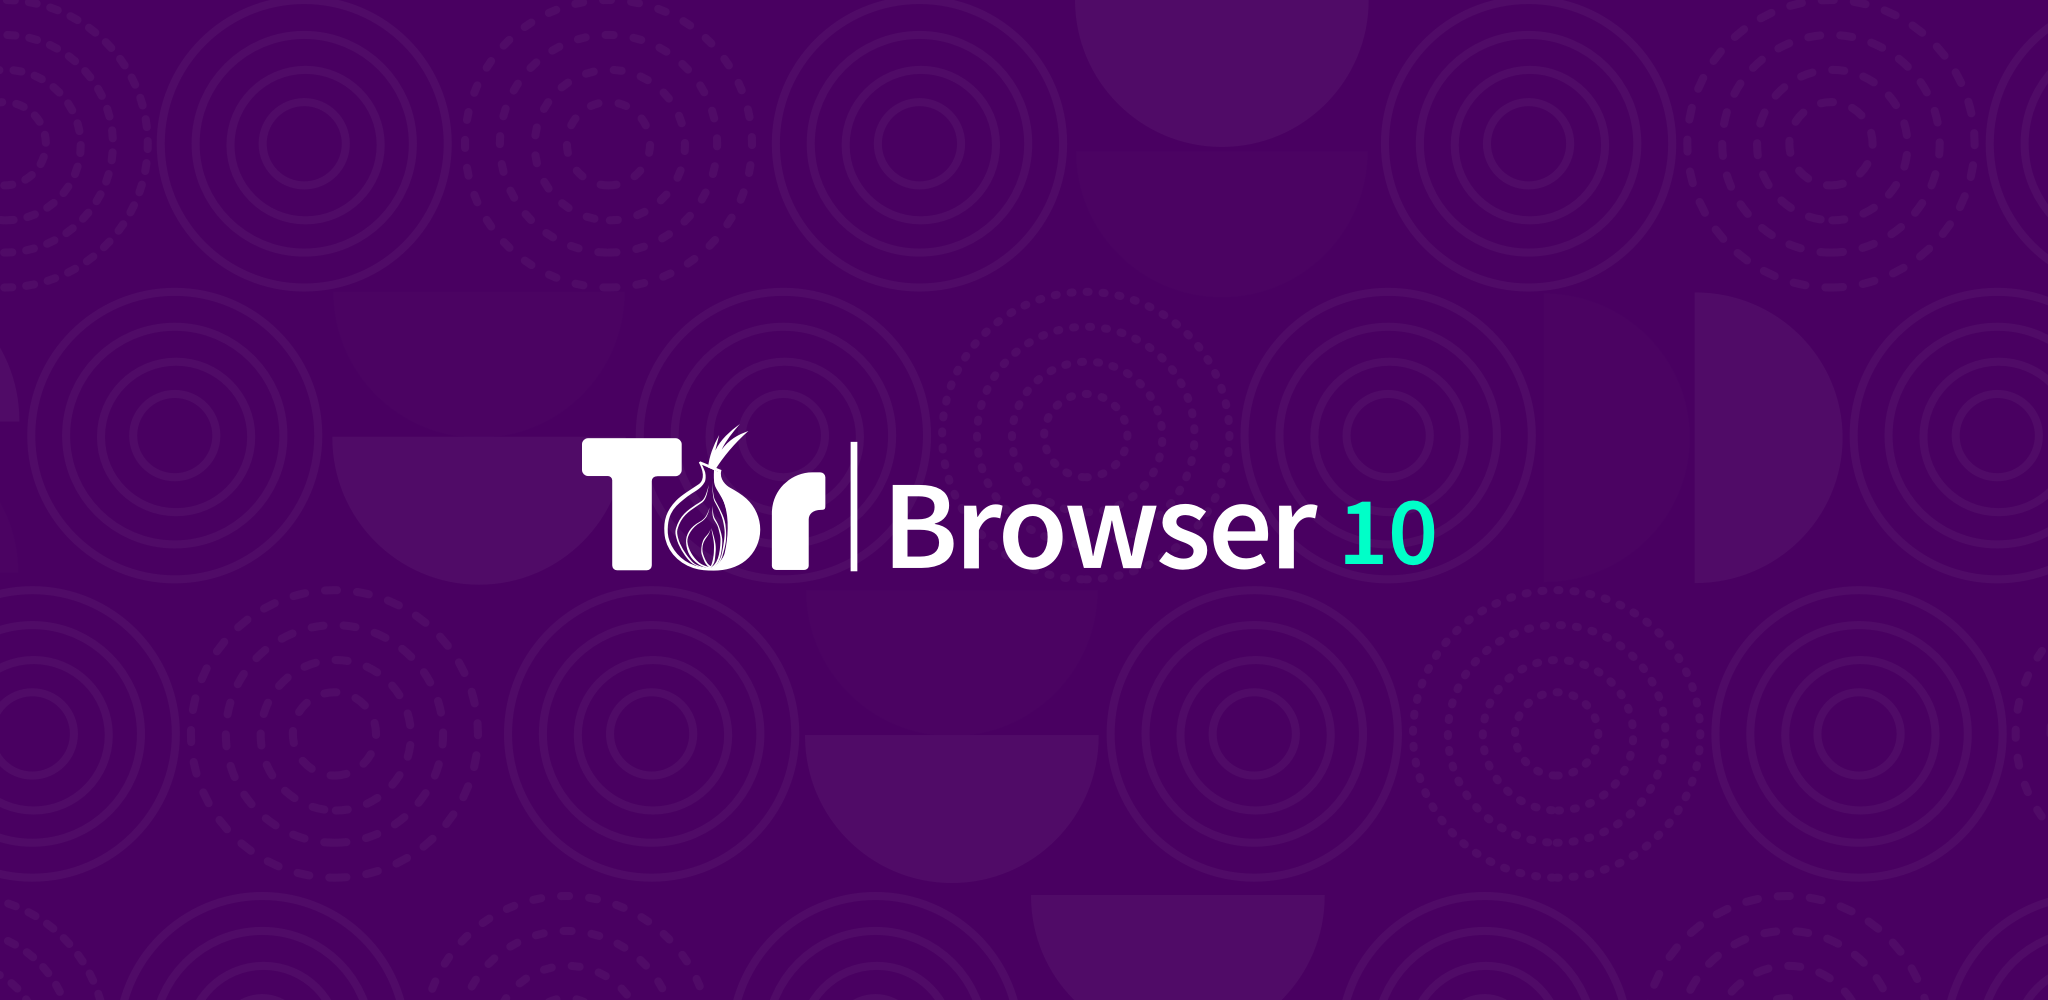 Tor browser на windows mega tor network browser bundle mega